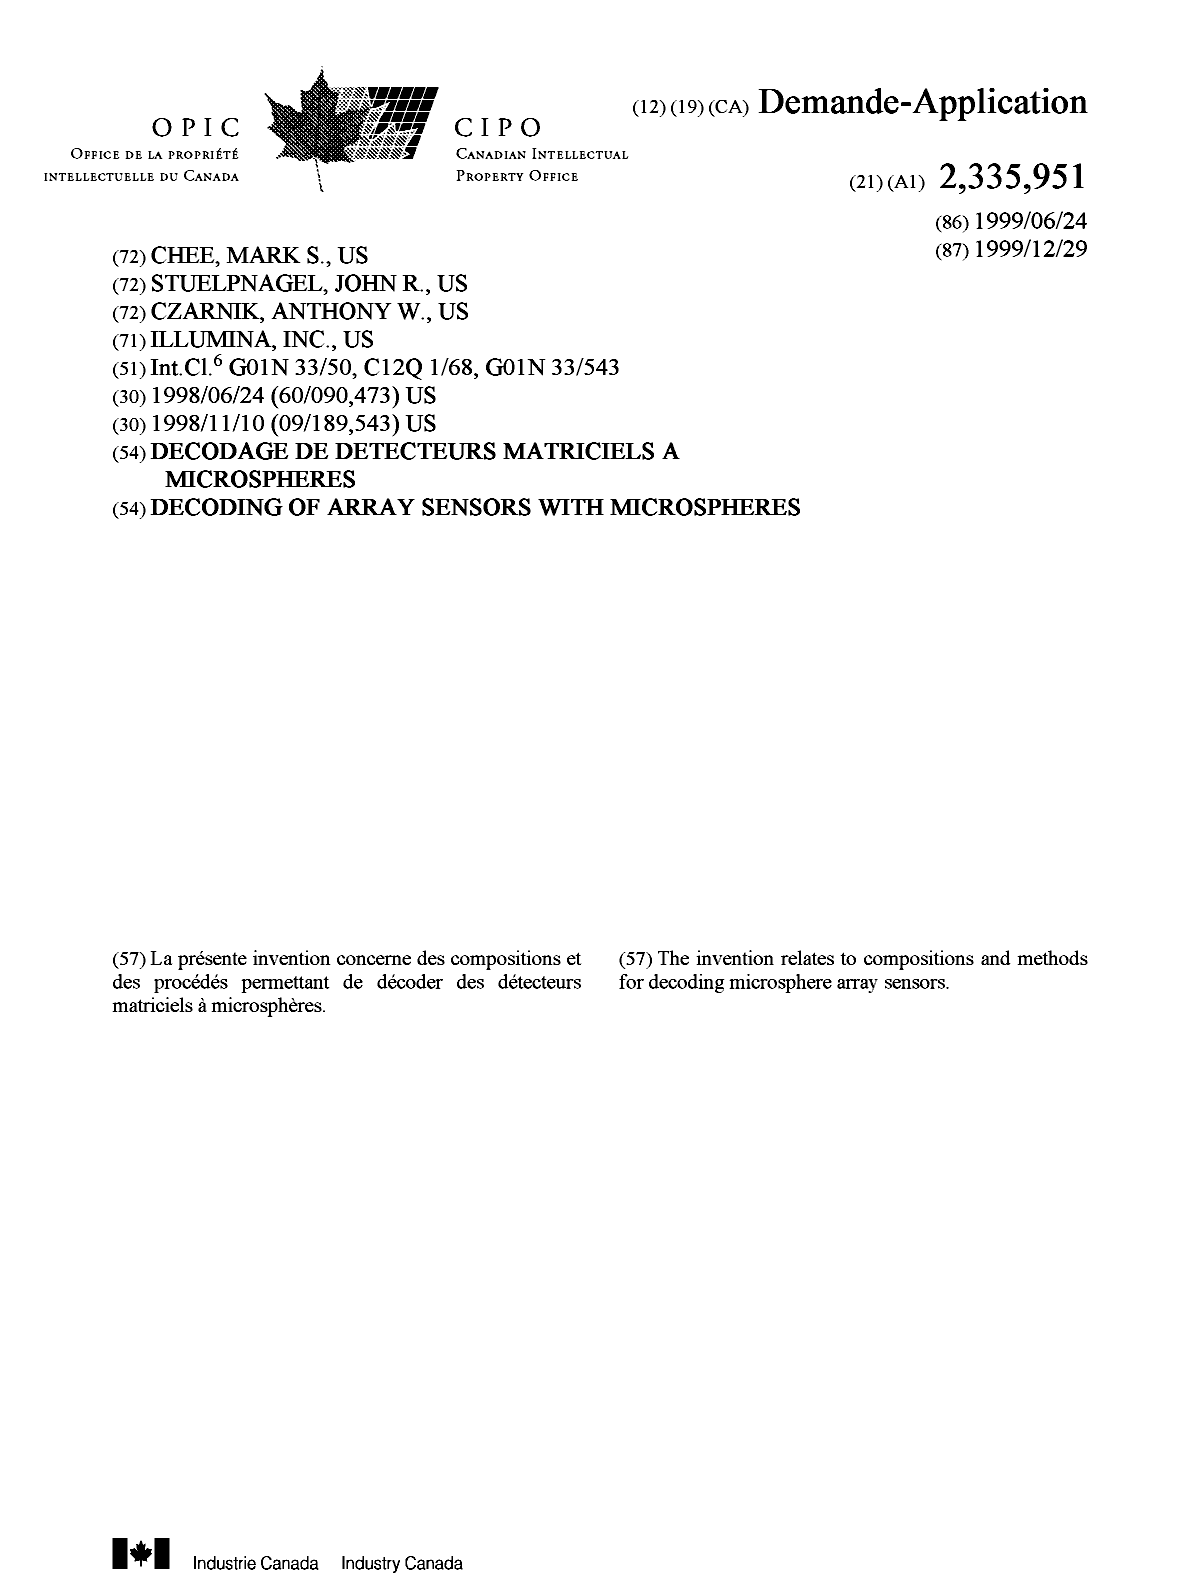 Document de brevet canadien 2335951. Page couverture 20010410. Image 1 de 1